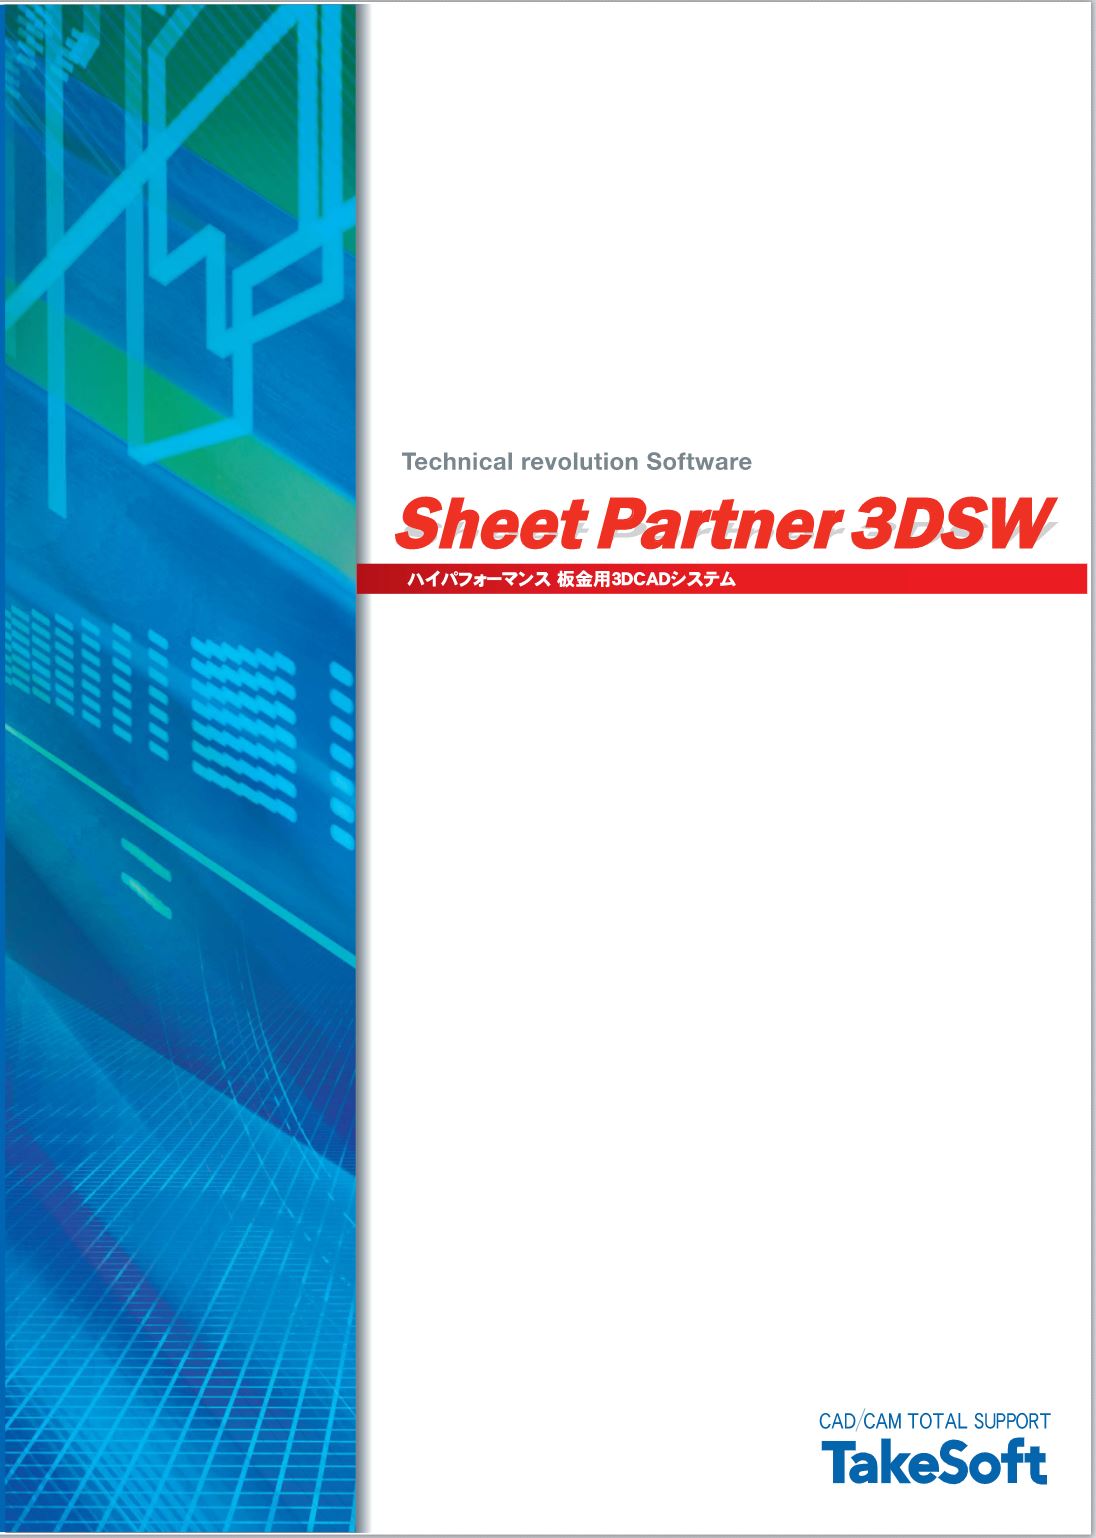 sheetpartner_3DSW_sub